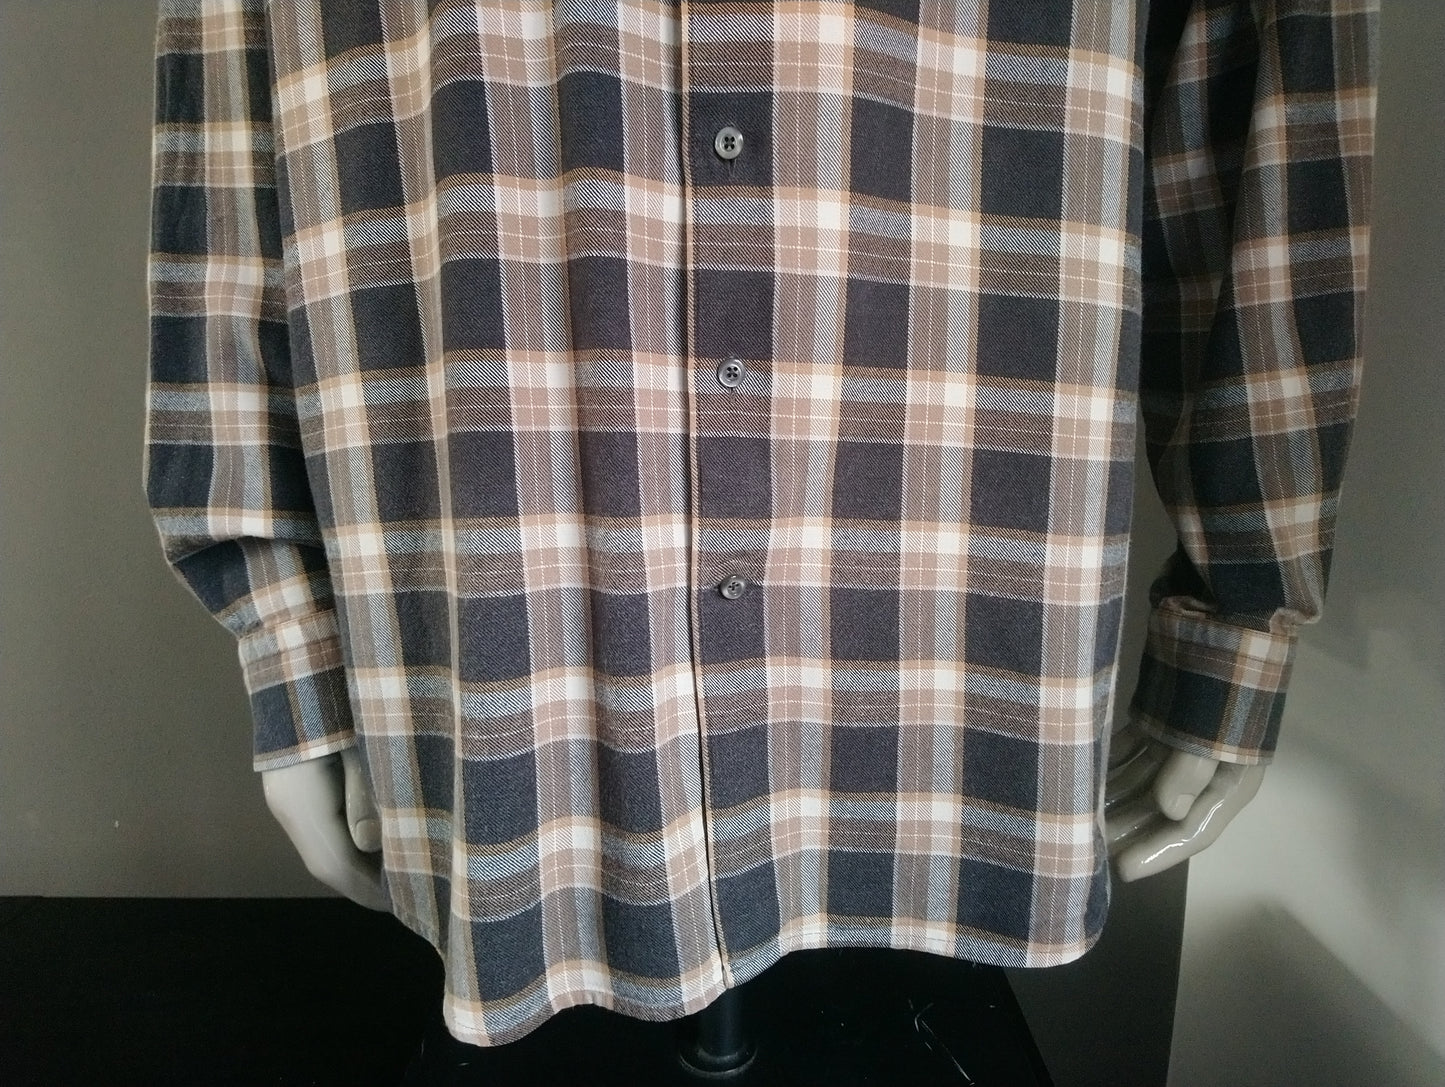 Daniel Hechter Shirt. Brown beige checkered motif. Size 2XL / XXL